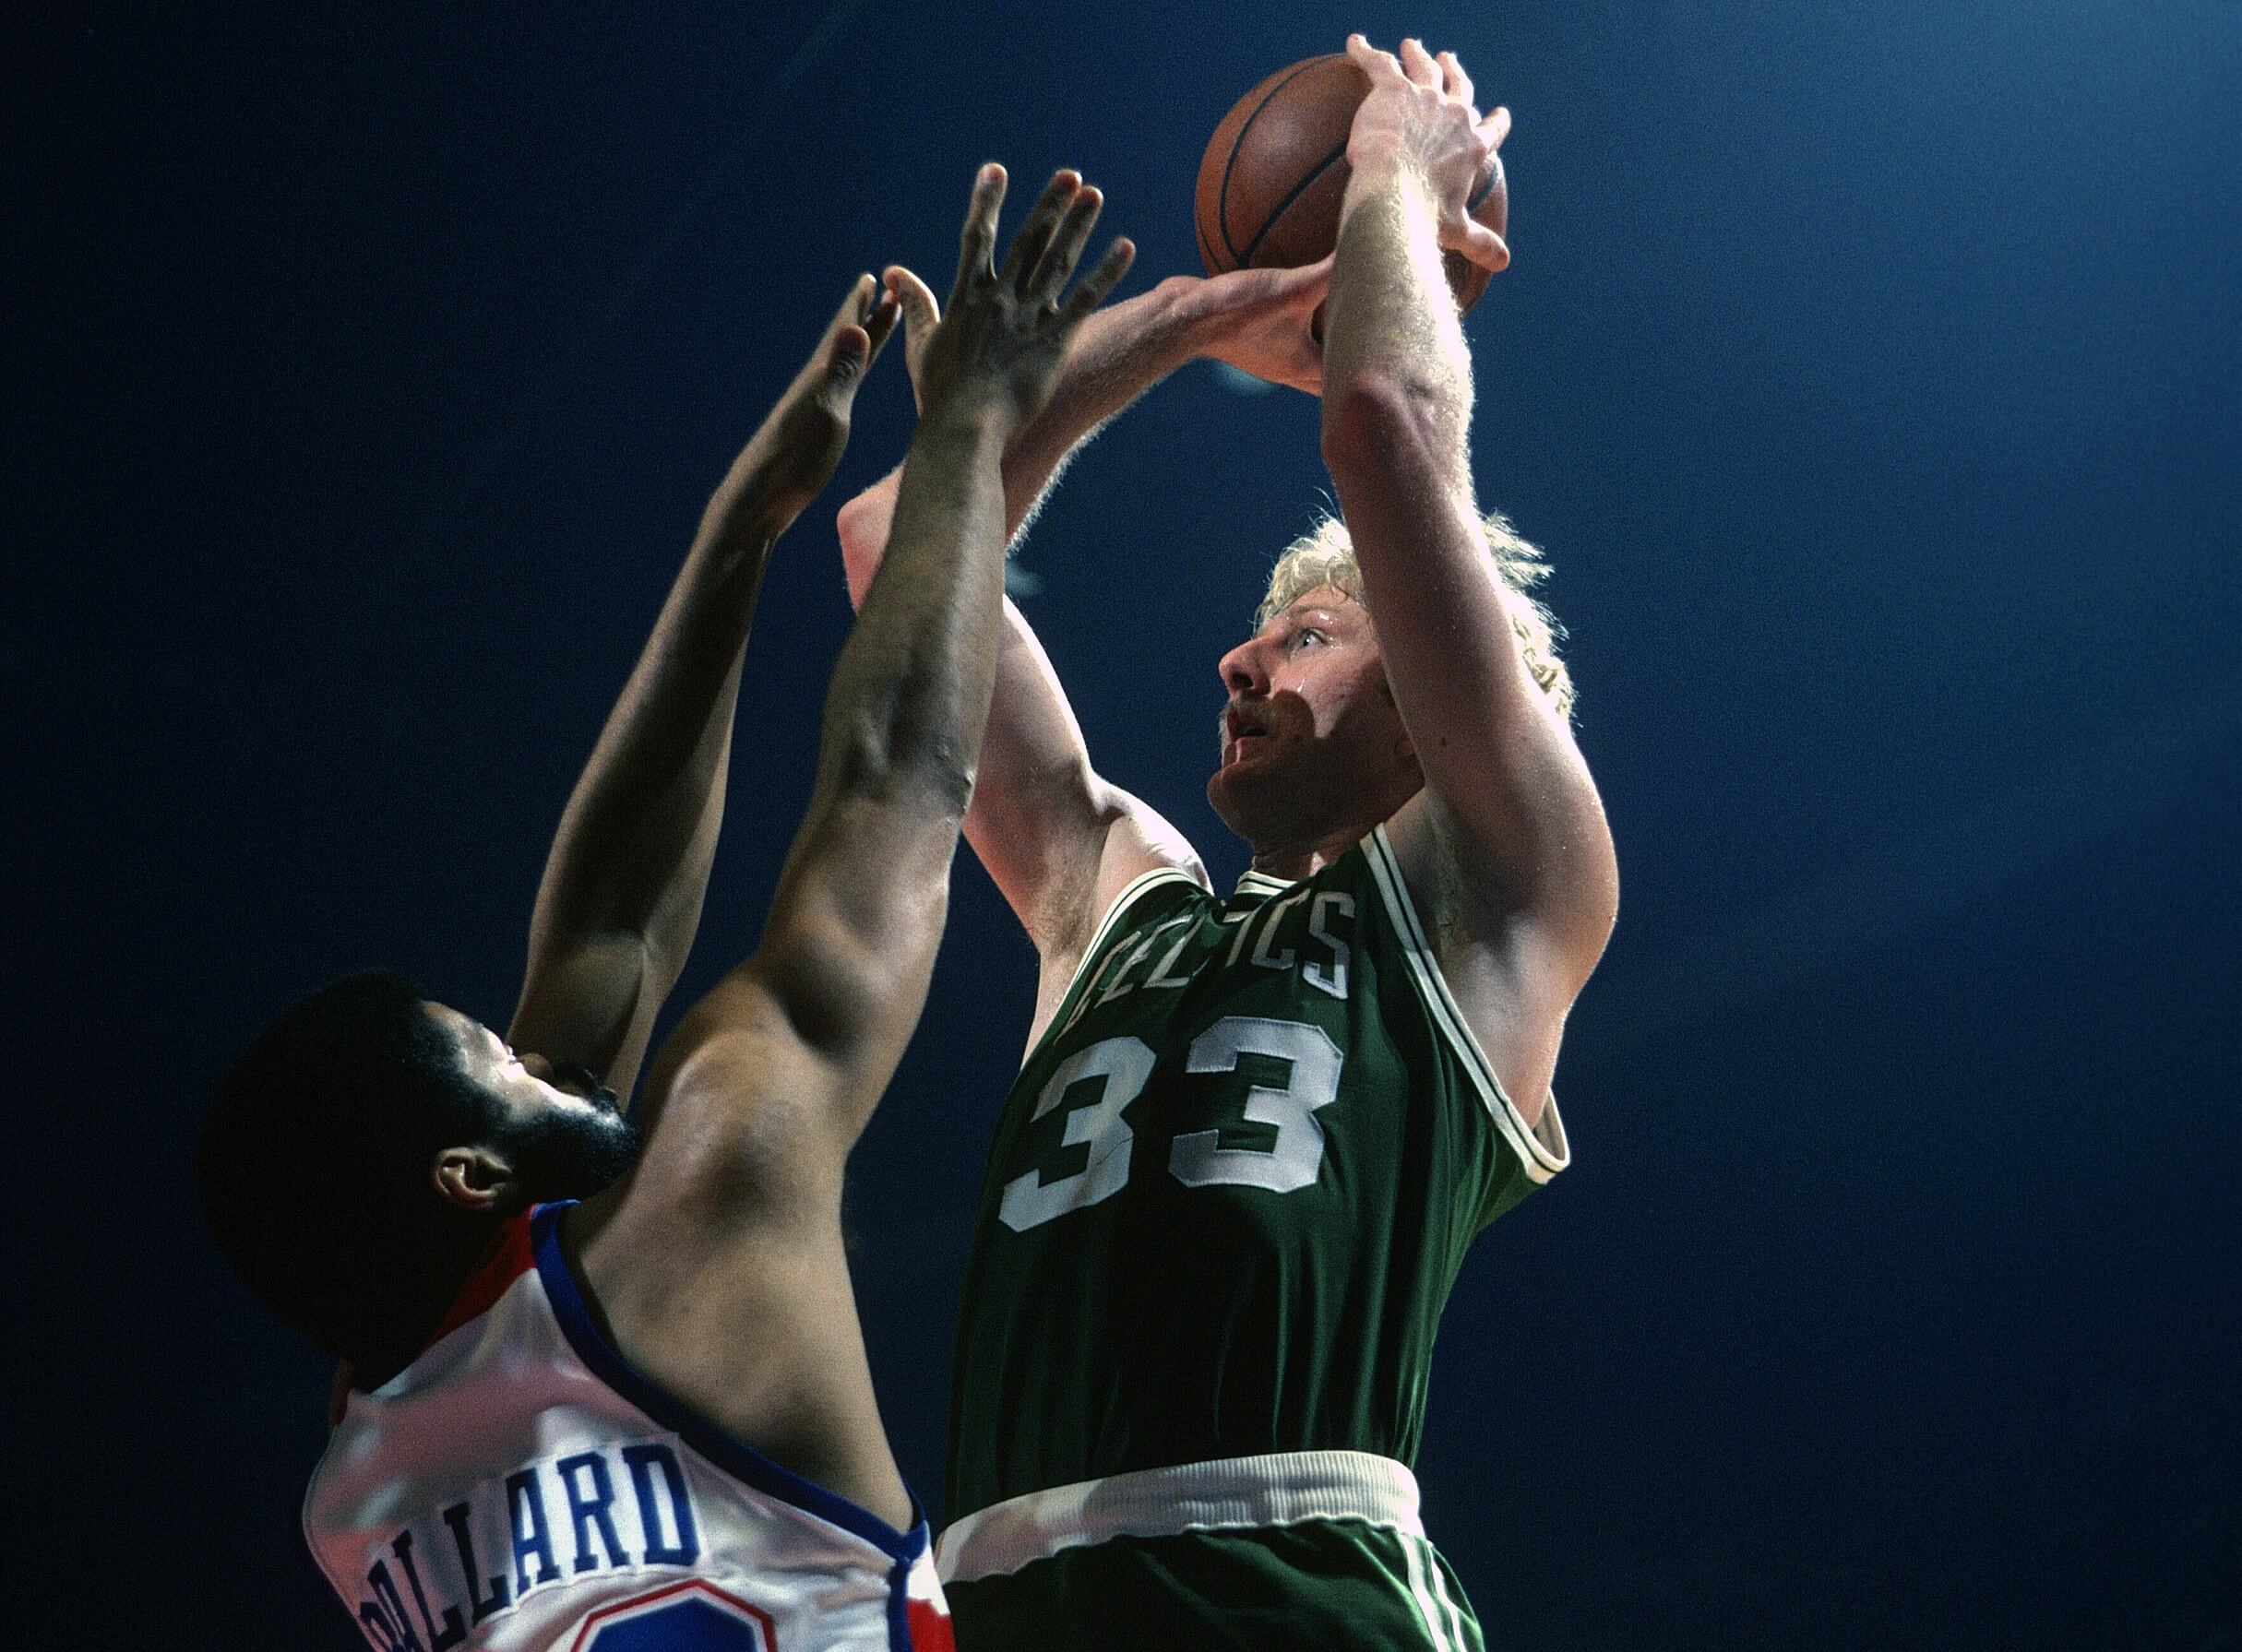 Larry Bird of the Boston Celtics shoots over Greg Ballard of the Washington Bullets.